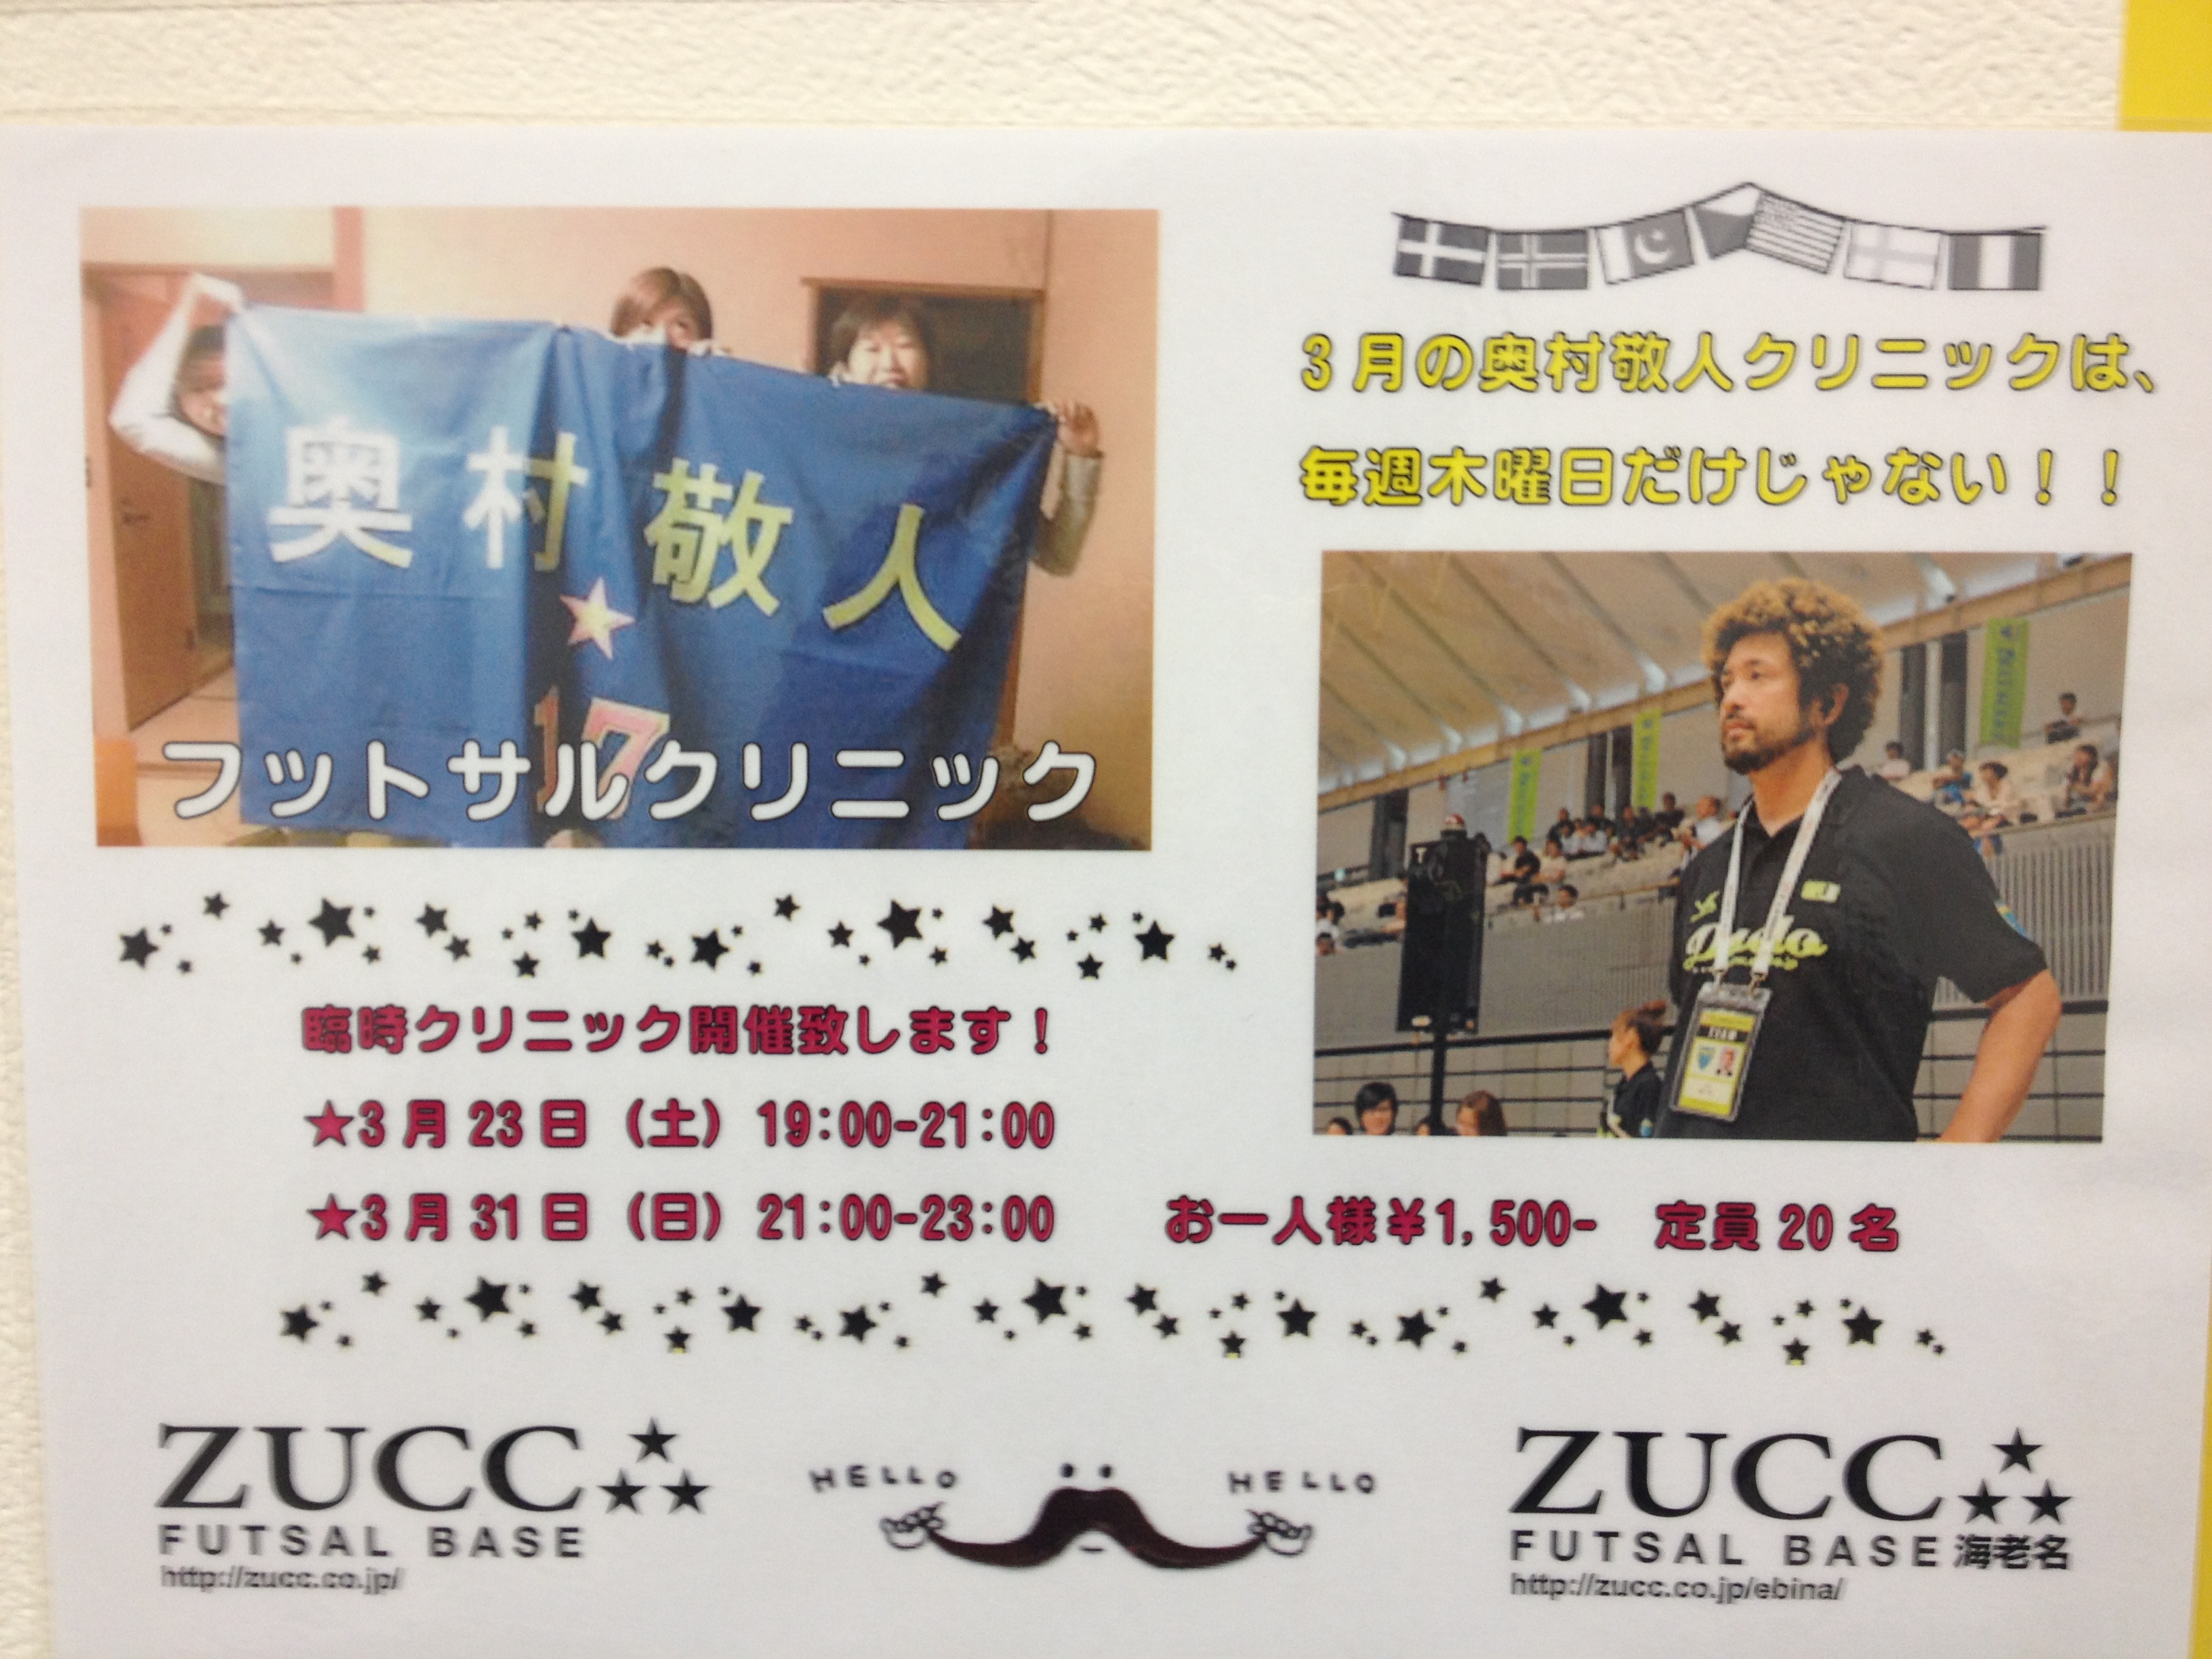 http://zucc.co.jp/staffblog/ajkdsj%3Ba%3B.JPG